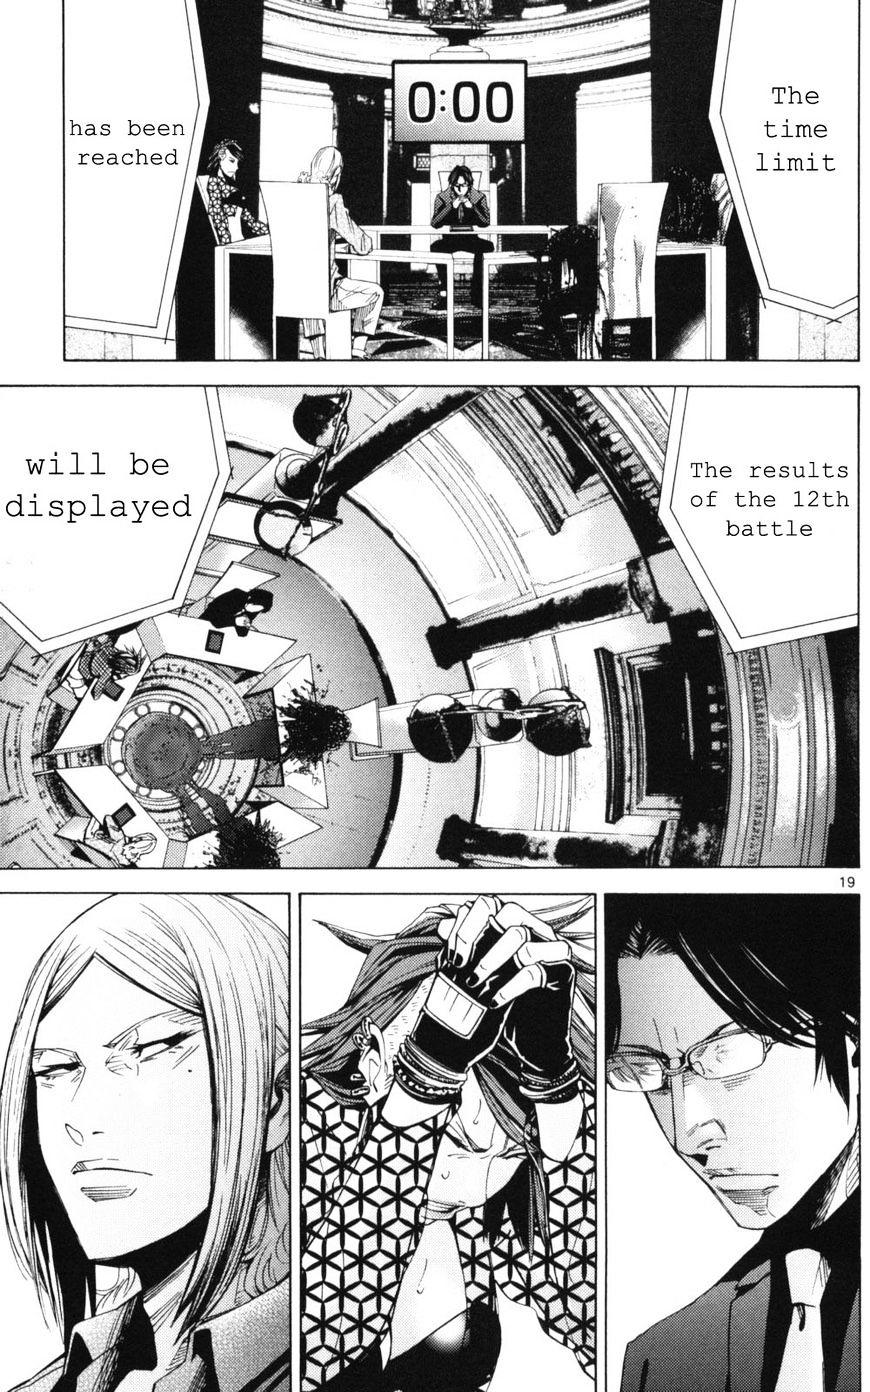 Imawa No Kuni No Alice Chapter 51.3 : Side Story 6 - King Of Diamonds (3) page 19 - Mangakakalot